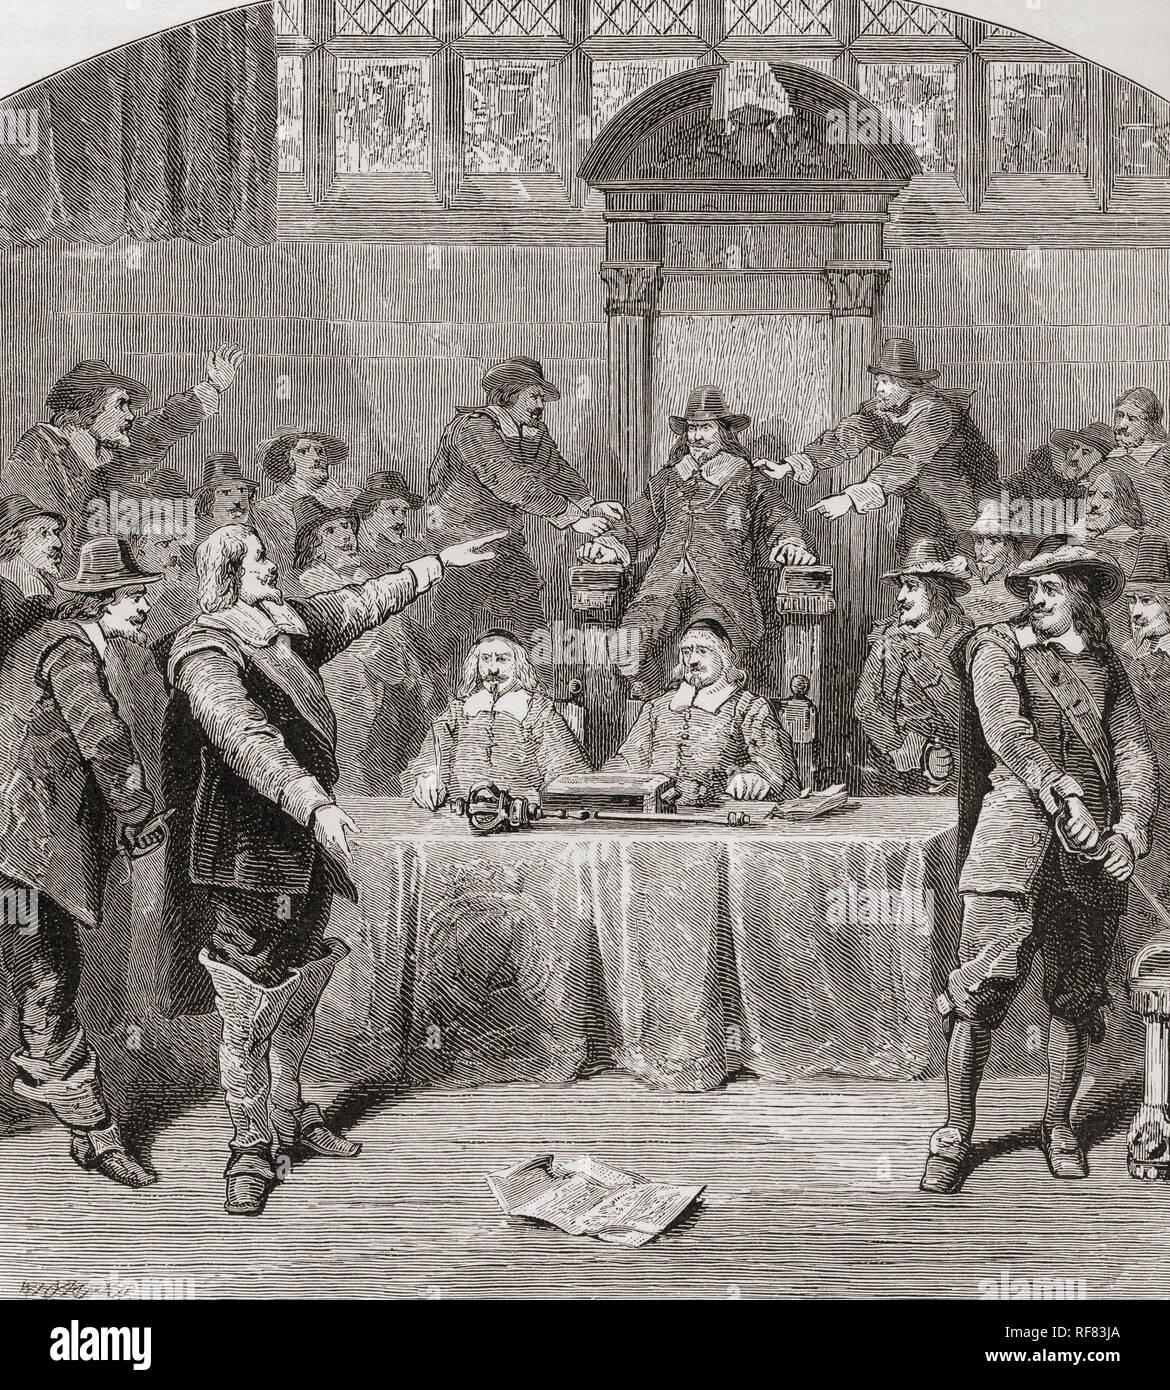 John Eliot era un difensore della libertà di discorso per la House of Commons. Durante il Parlamento del 1629 Eliot ha presentato tre risoluzioni di condanna Carlo I di imposizione illegale e politiche religiose. Charles ha ordinato al Parlamento di rinviare, ma Eliot aveva l'altoparlante della House of Commons, Sir John Finch, tenuto premuto nella sua sedia da Denzil Holles e Benjamin Valentine finché le risoluzioni sono state lette. Di conseguenza Eliot e altri sono stati arrestati e imprigionati nella Torre di Londra. Sir John Eliot, 1592 - 1632. Statista inglese. Da Londra Foto, pubblicato 1890 Foto Stock